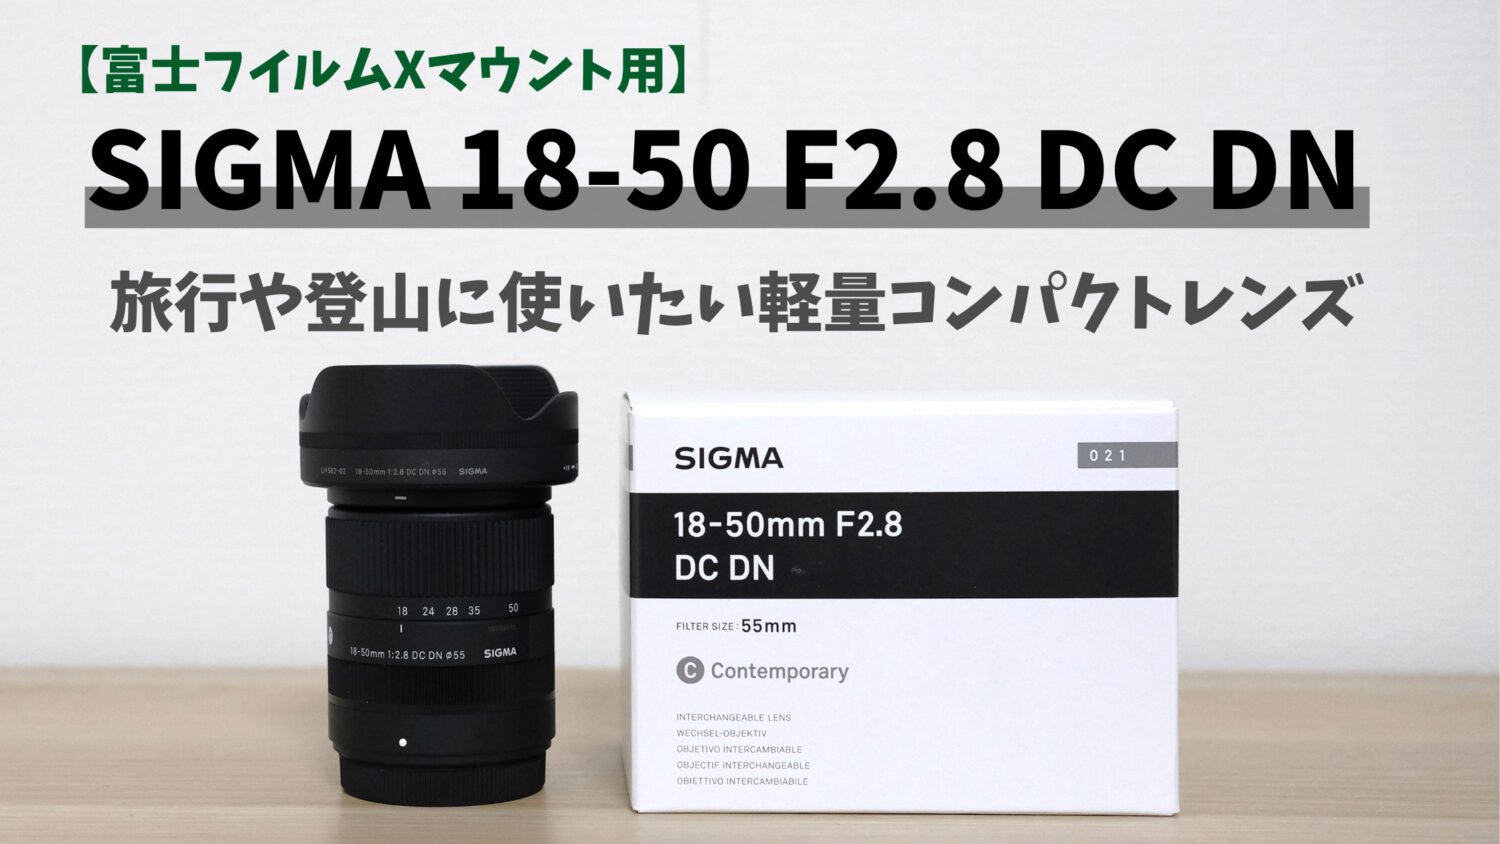 SIGMA 18-50mm F2.8 DC DNをレビュー！コンパクトなF2.8通しの明るいズームレンズ｜camlogカメラブログ